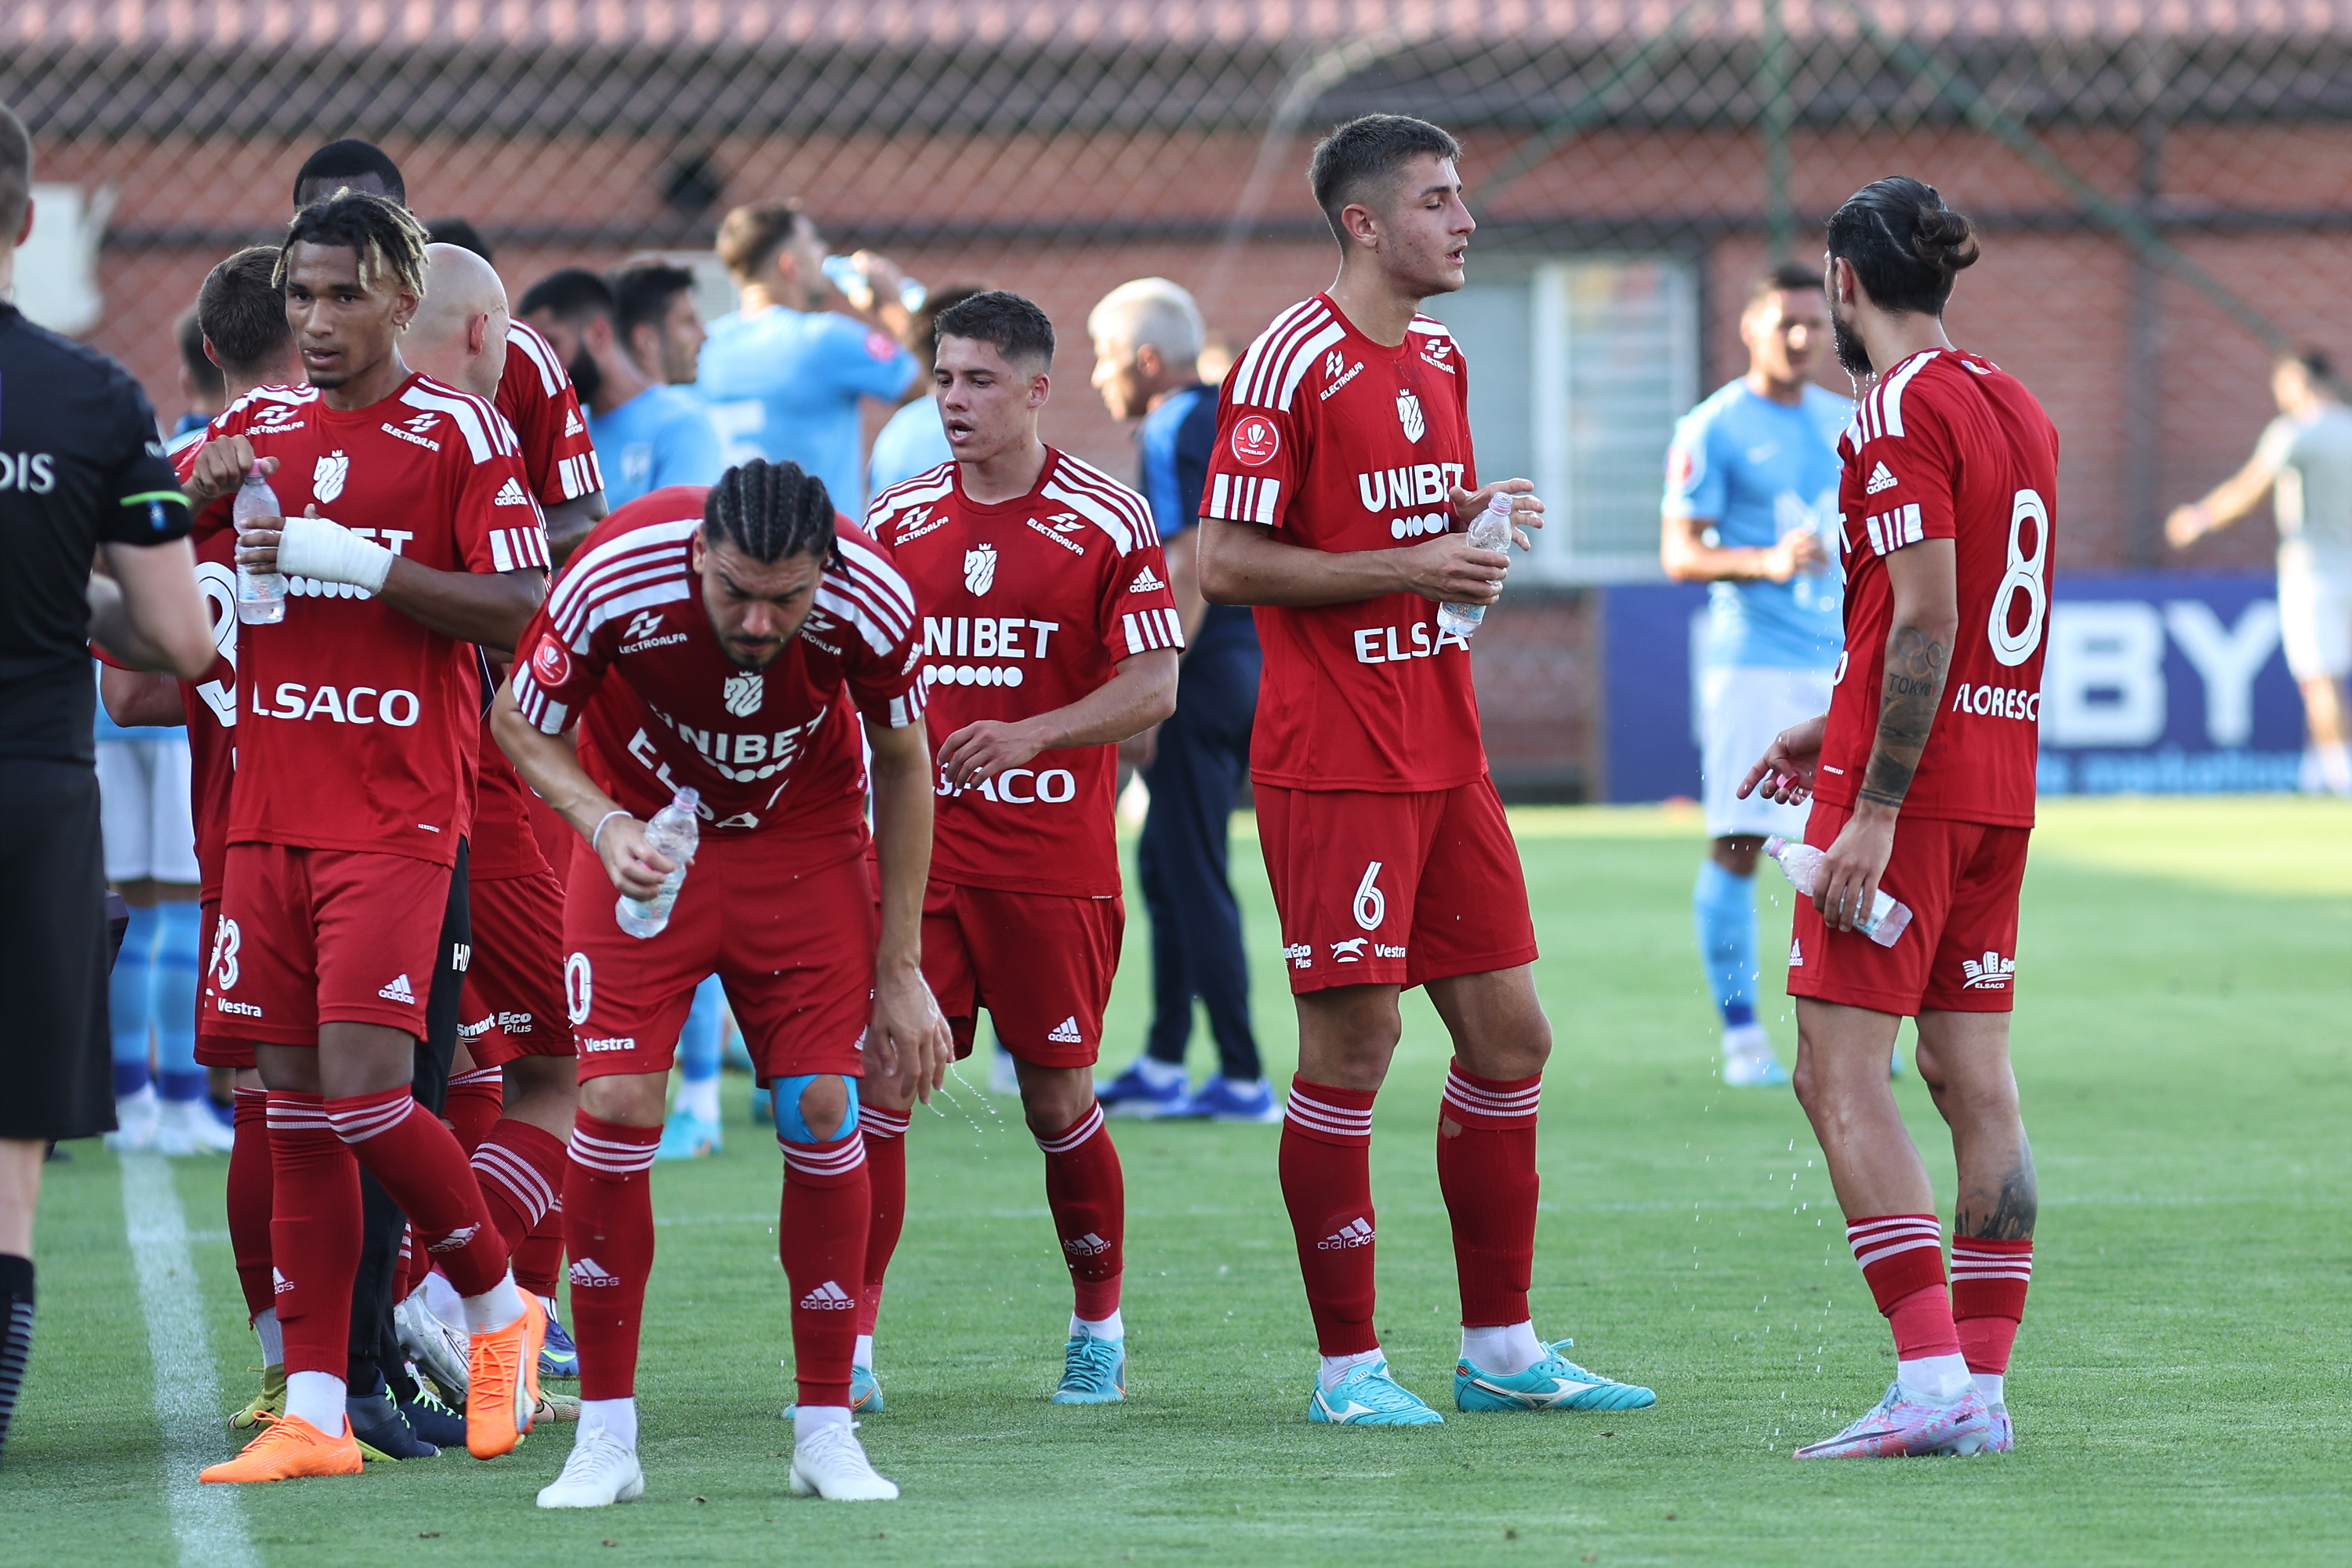 FC Botoșani - Oțelul, Live Text, 18:30, Digi Sport 1. Ambele echipe sunt fără victorie în actualul sezon